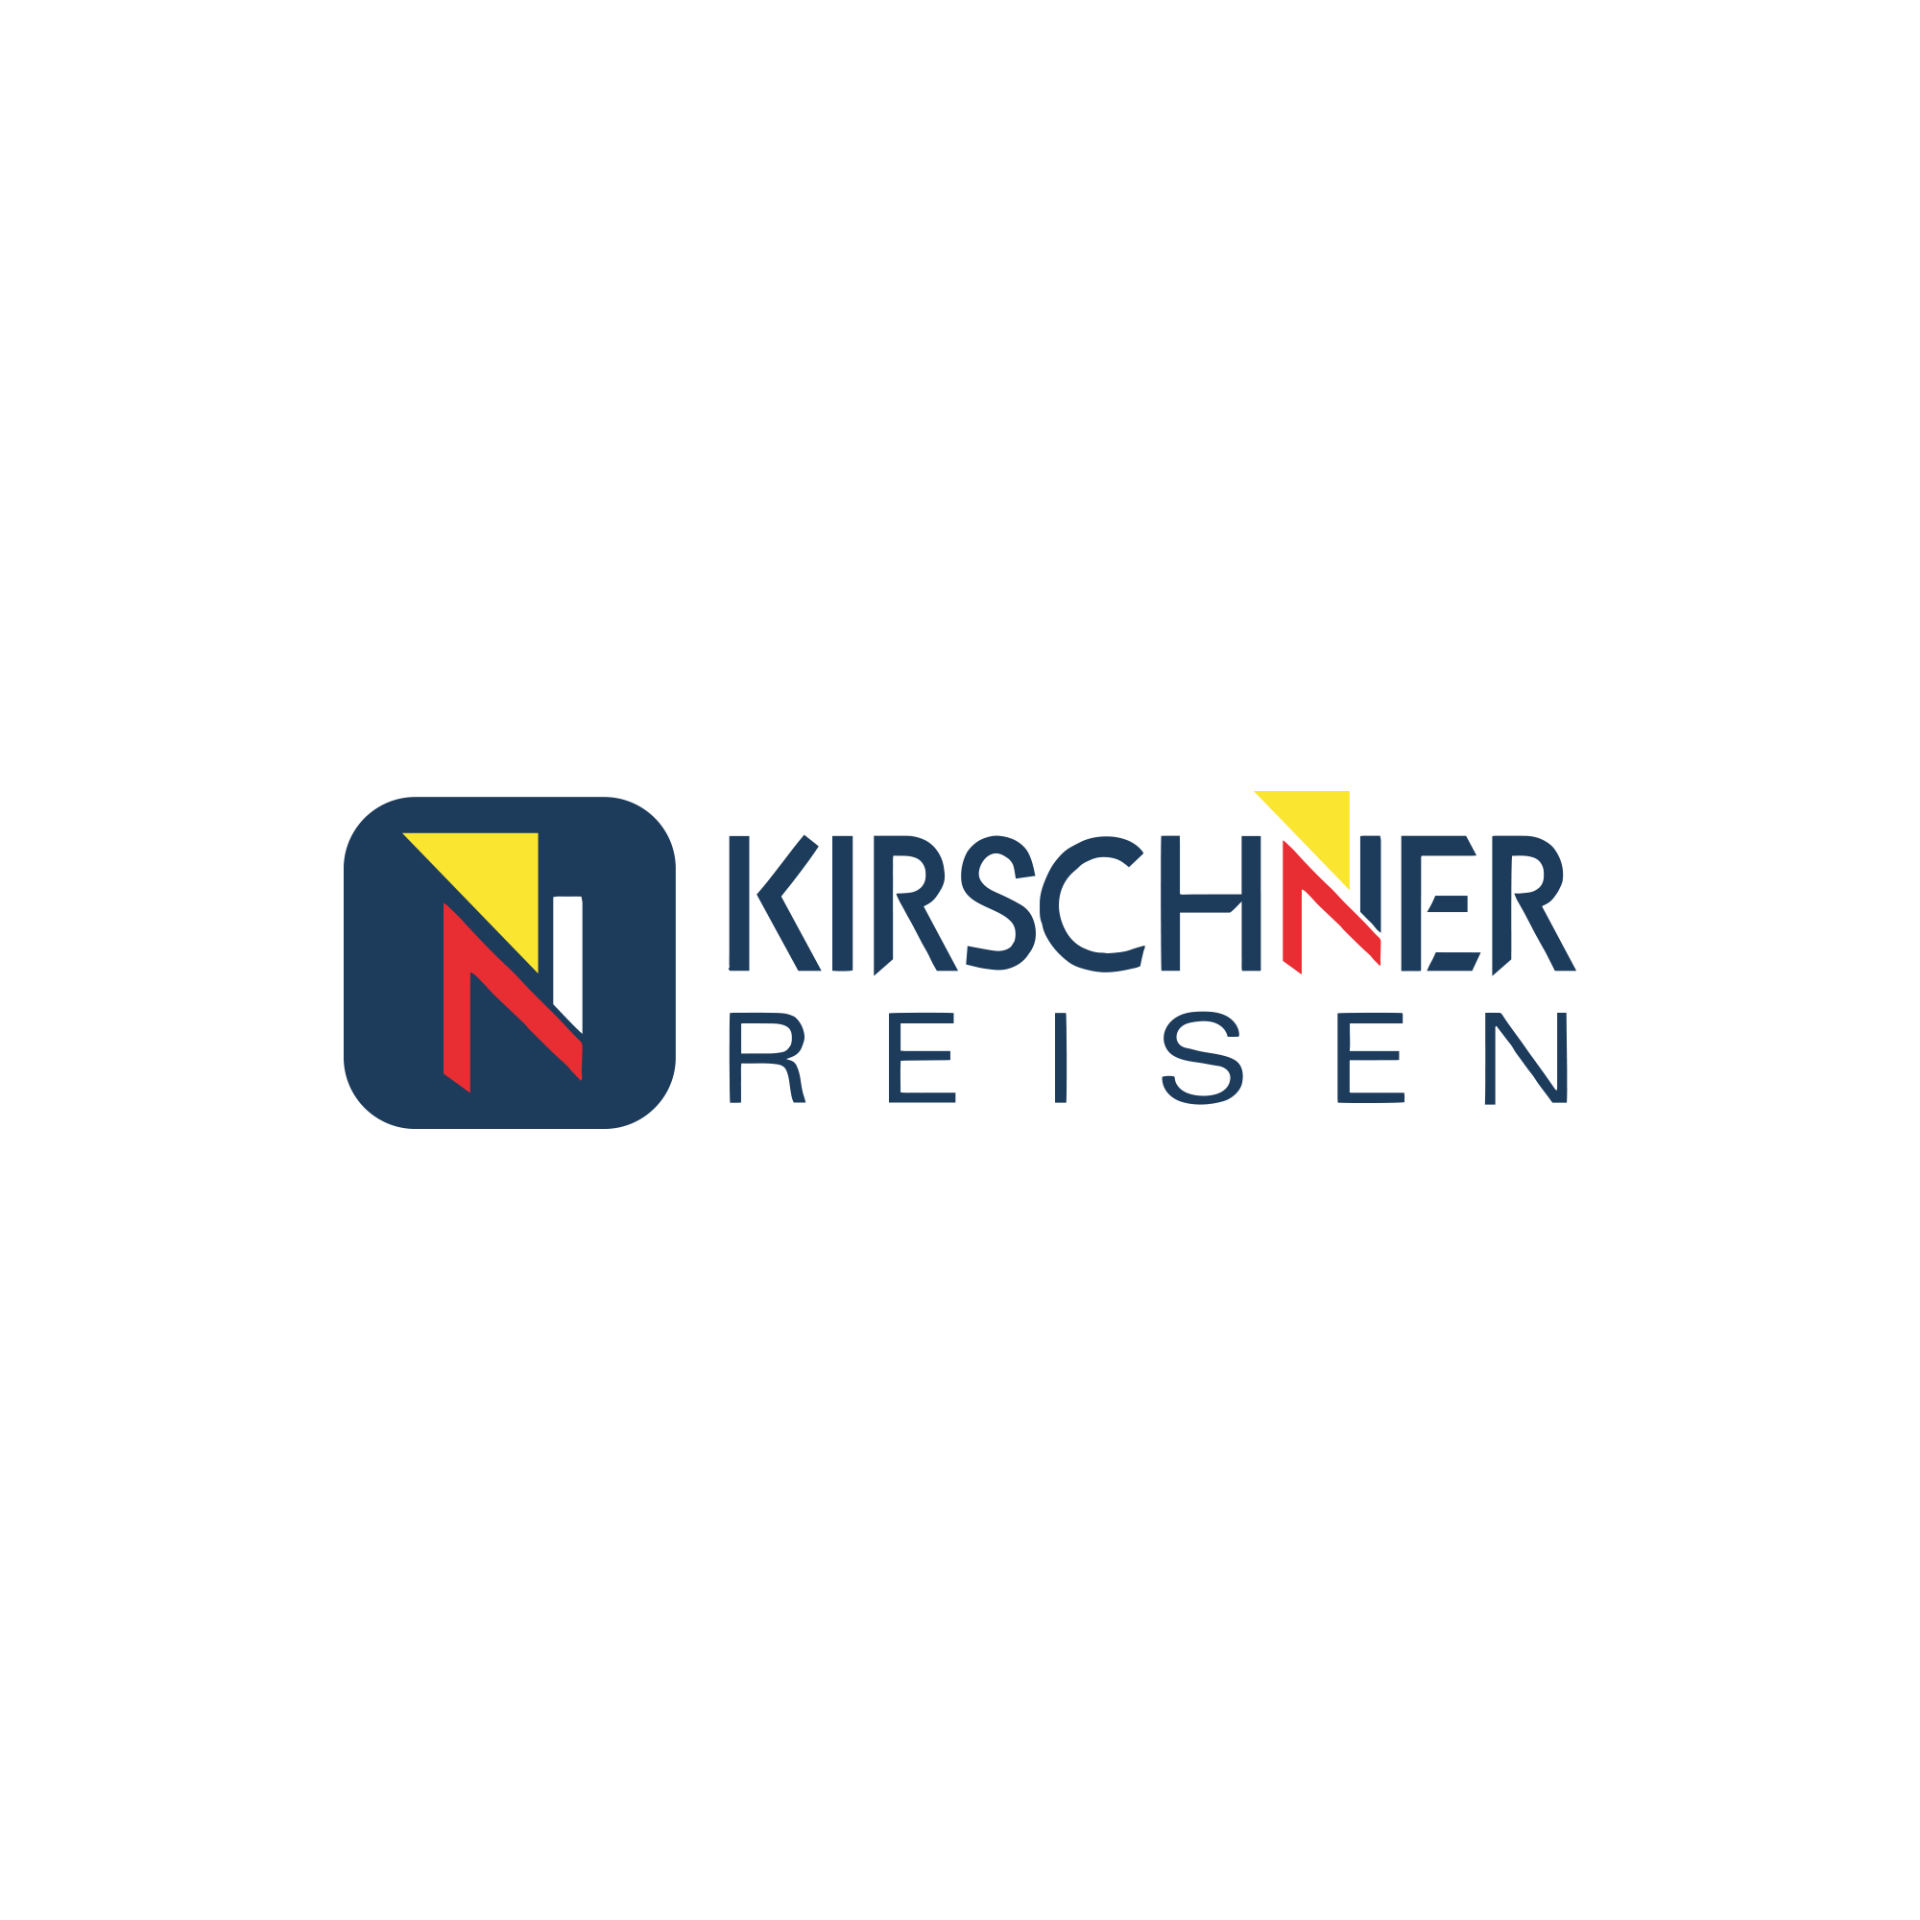 (c) Kirschner-reisen.de